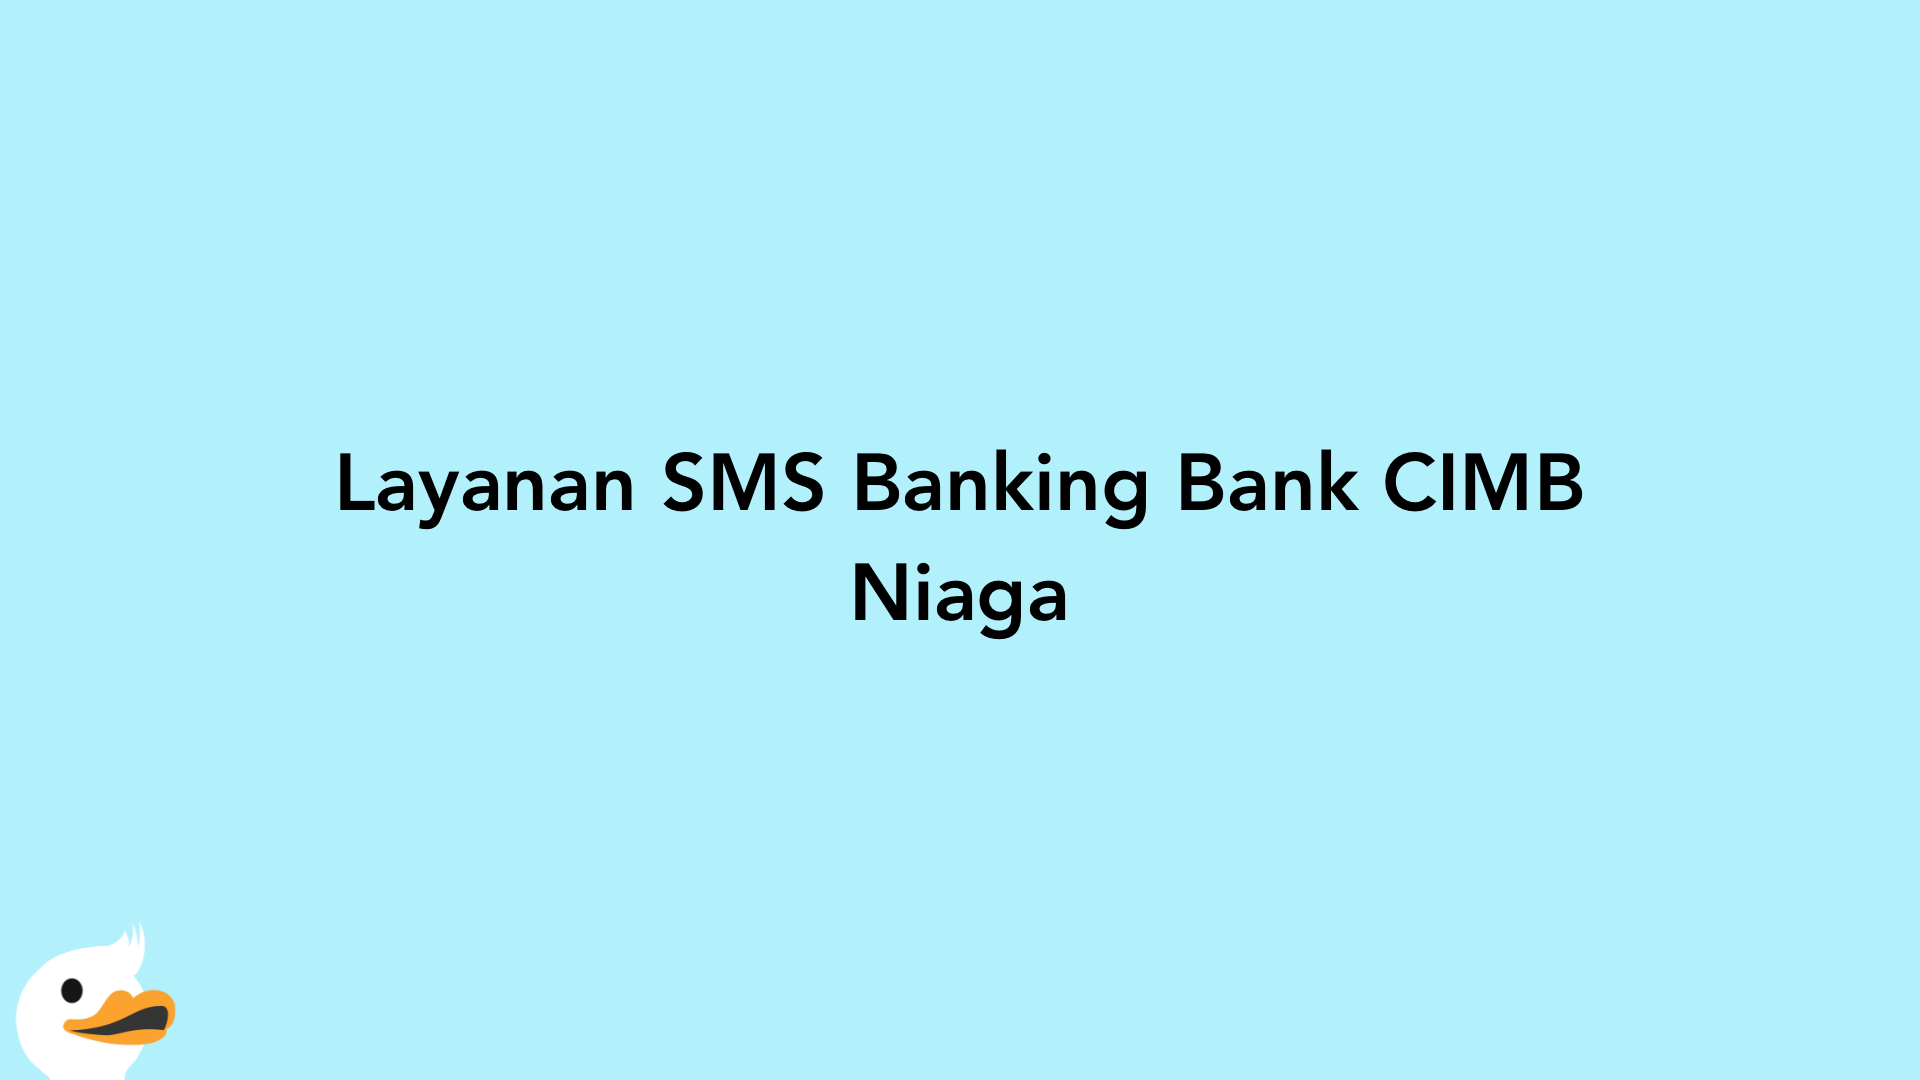 Layanan SMS Banking Bank CIMB Niaga